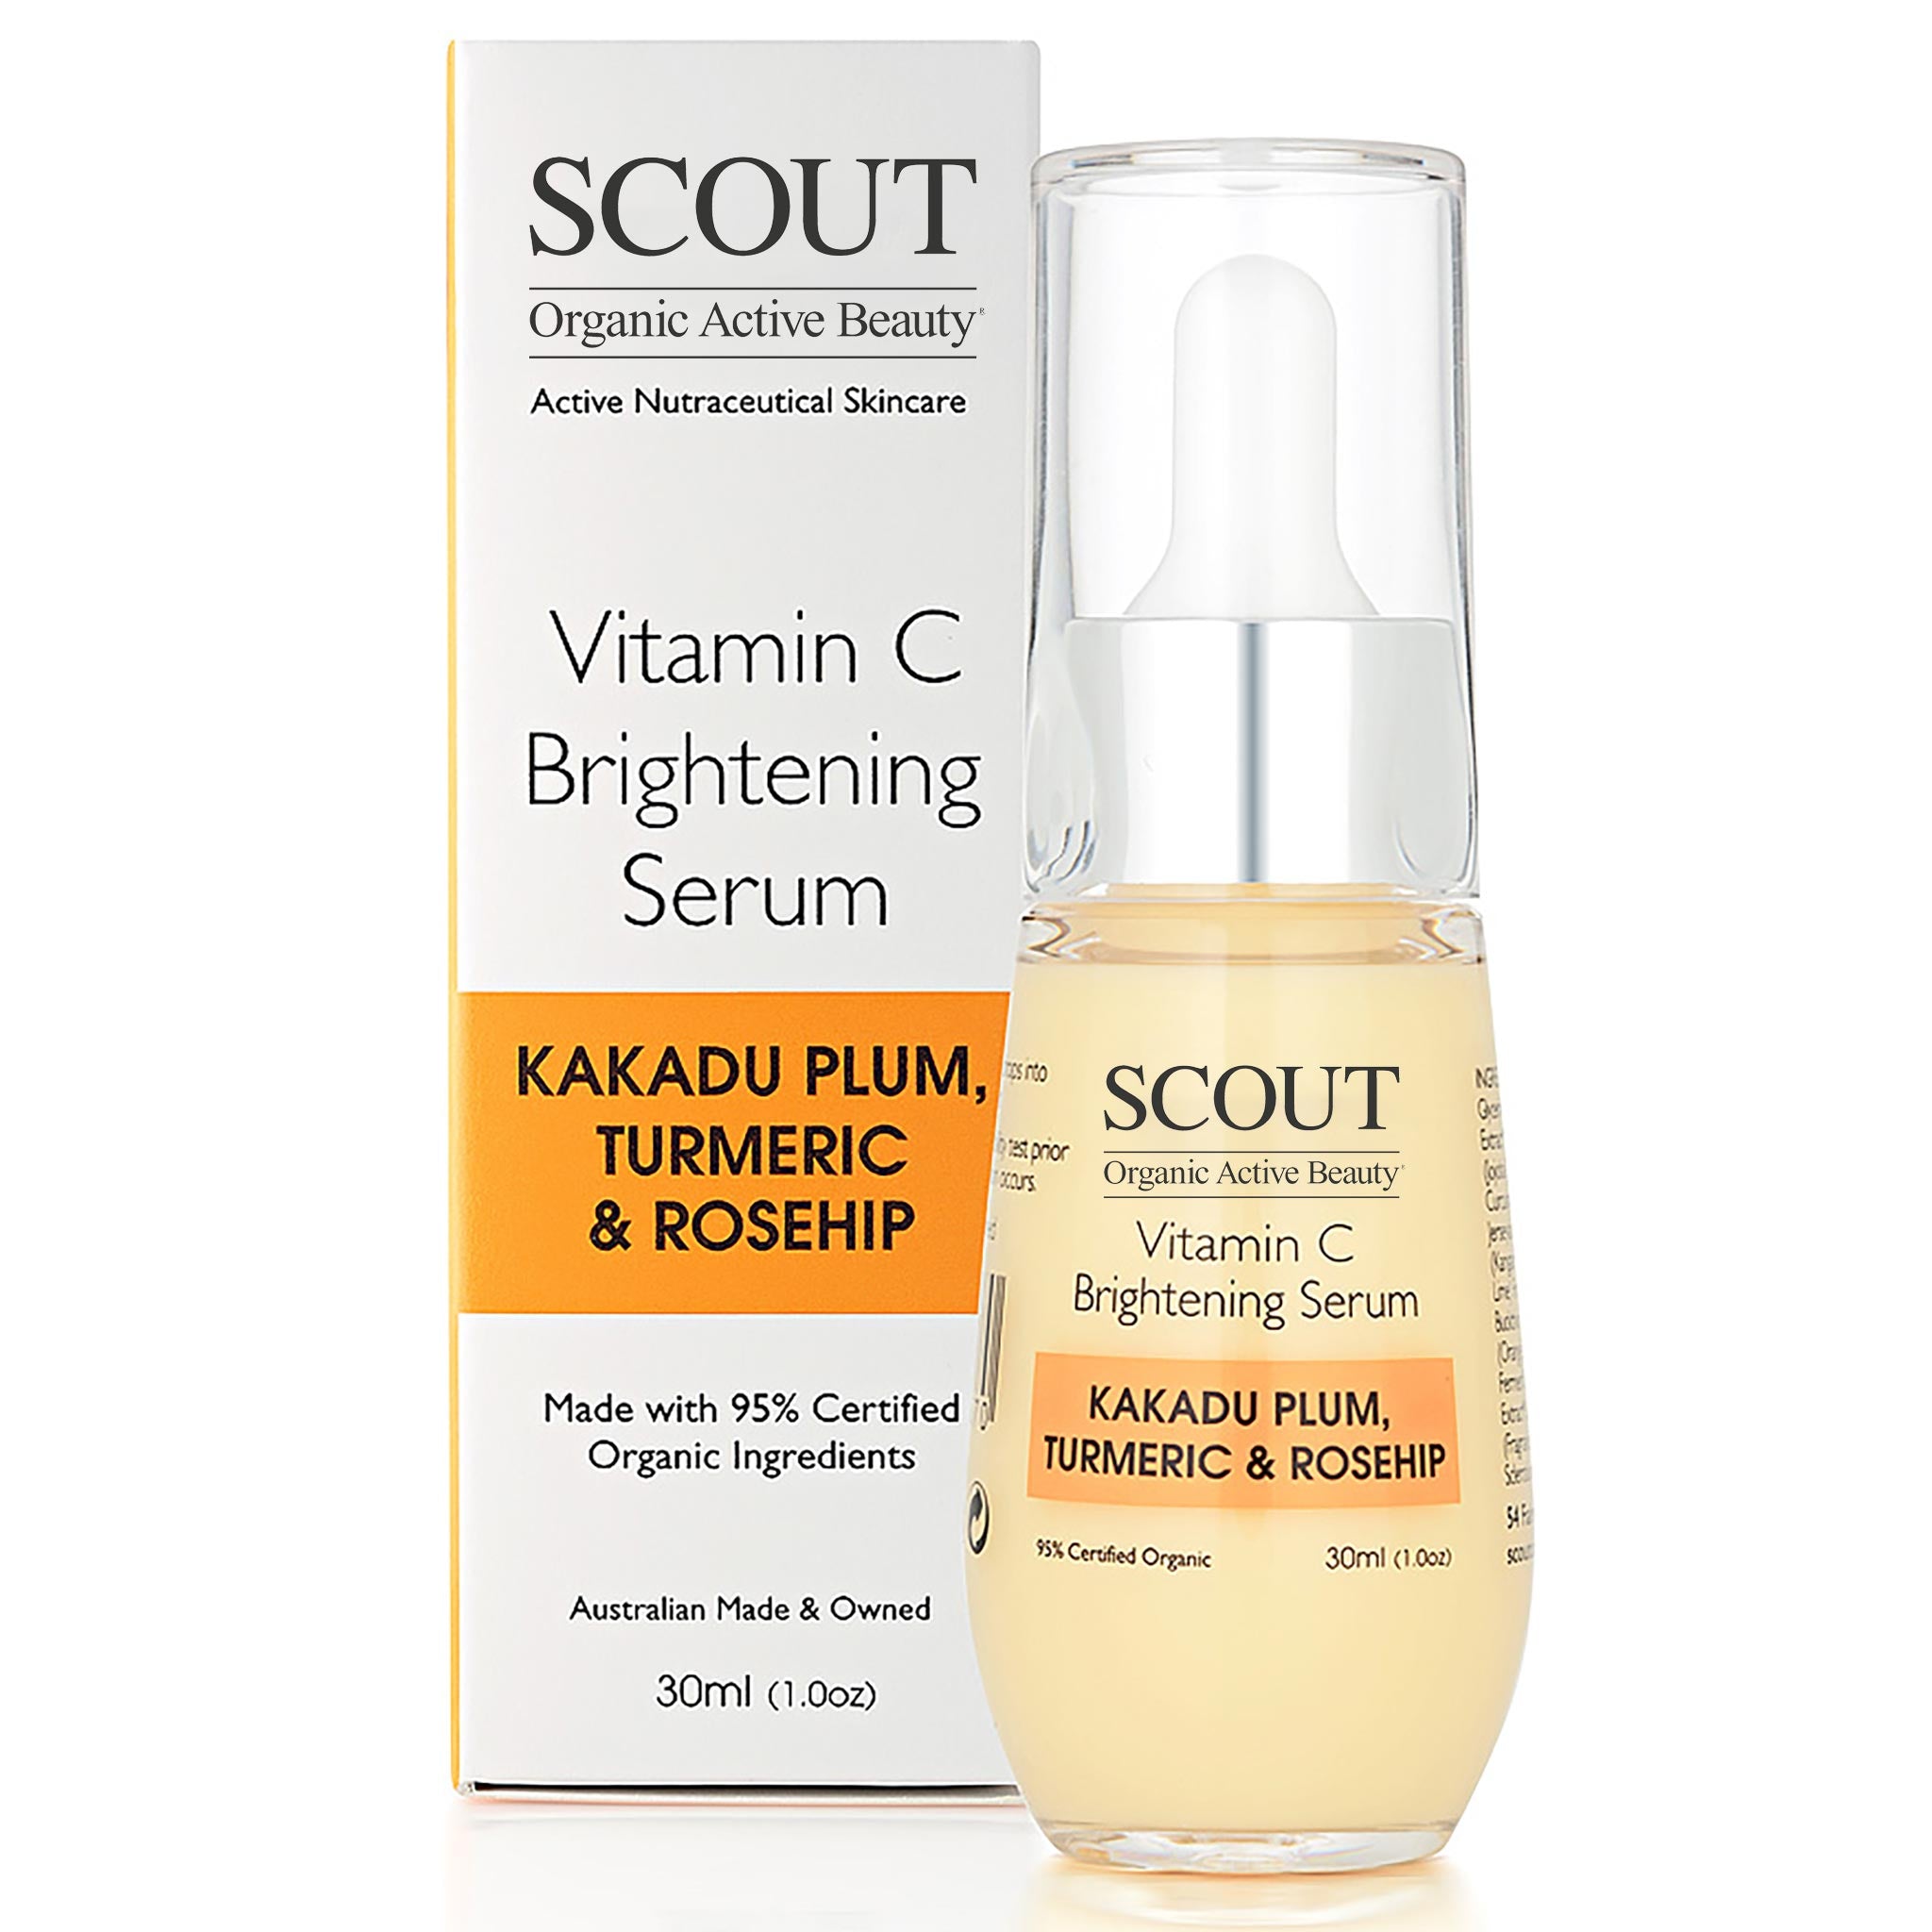 Vitamin C Brightening Serum with Kakadu Plum, Turmeric & Rosehip